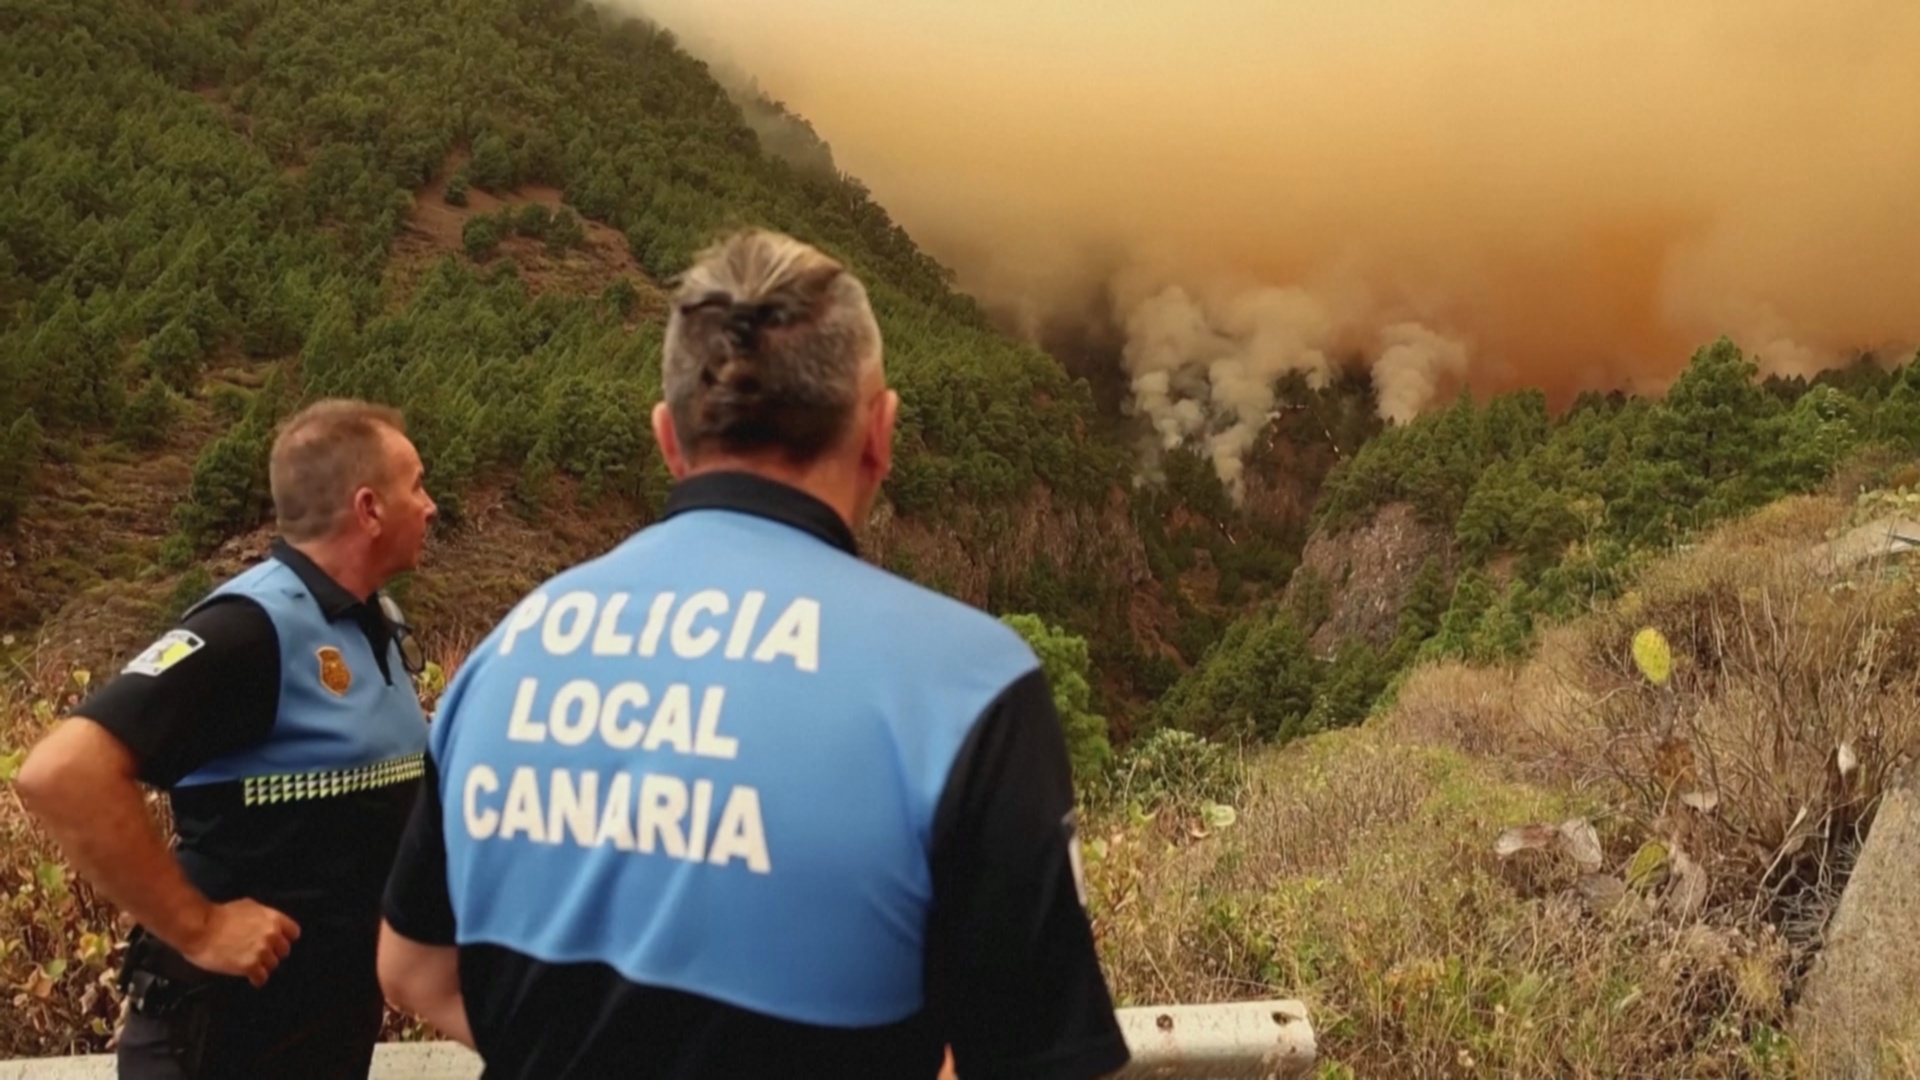 Сильный пожар на Тенерифе: пожарным мешает сложный ландшафт